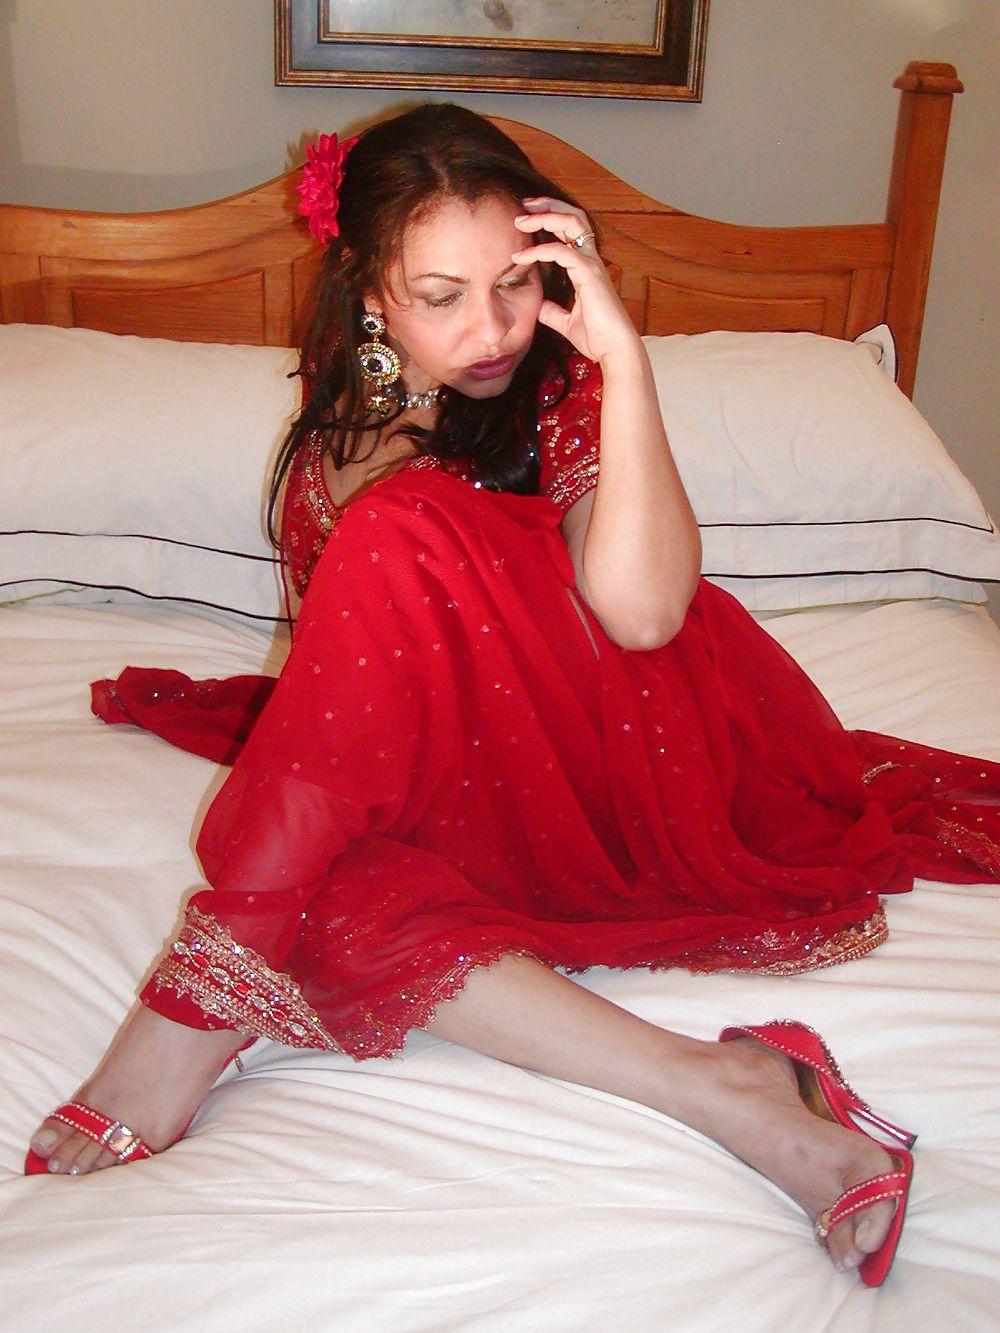 Indian sari MILF uk #8982531